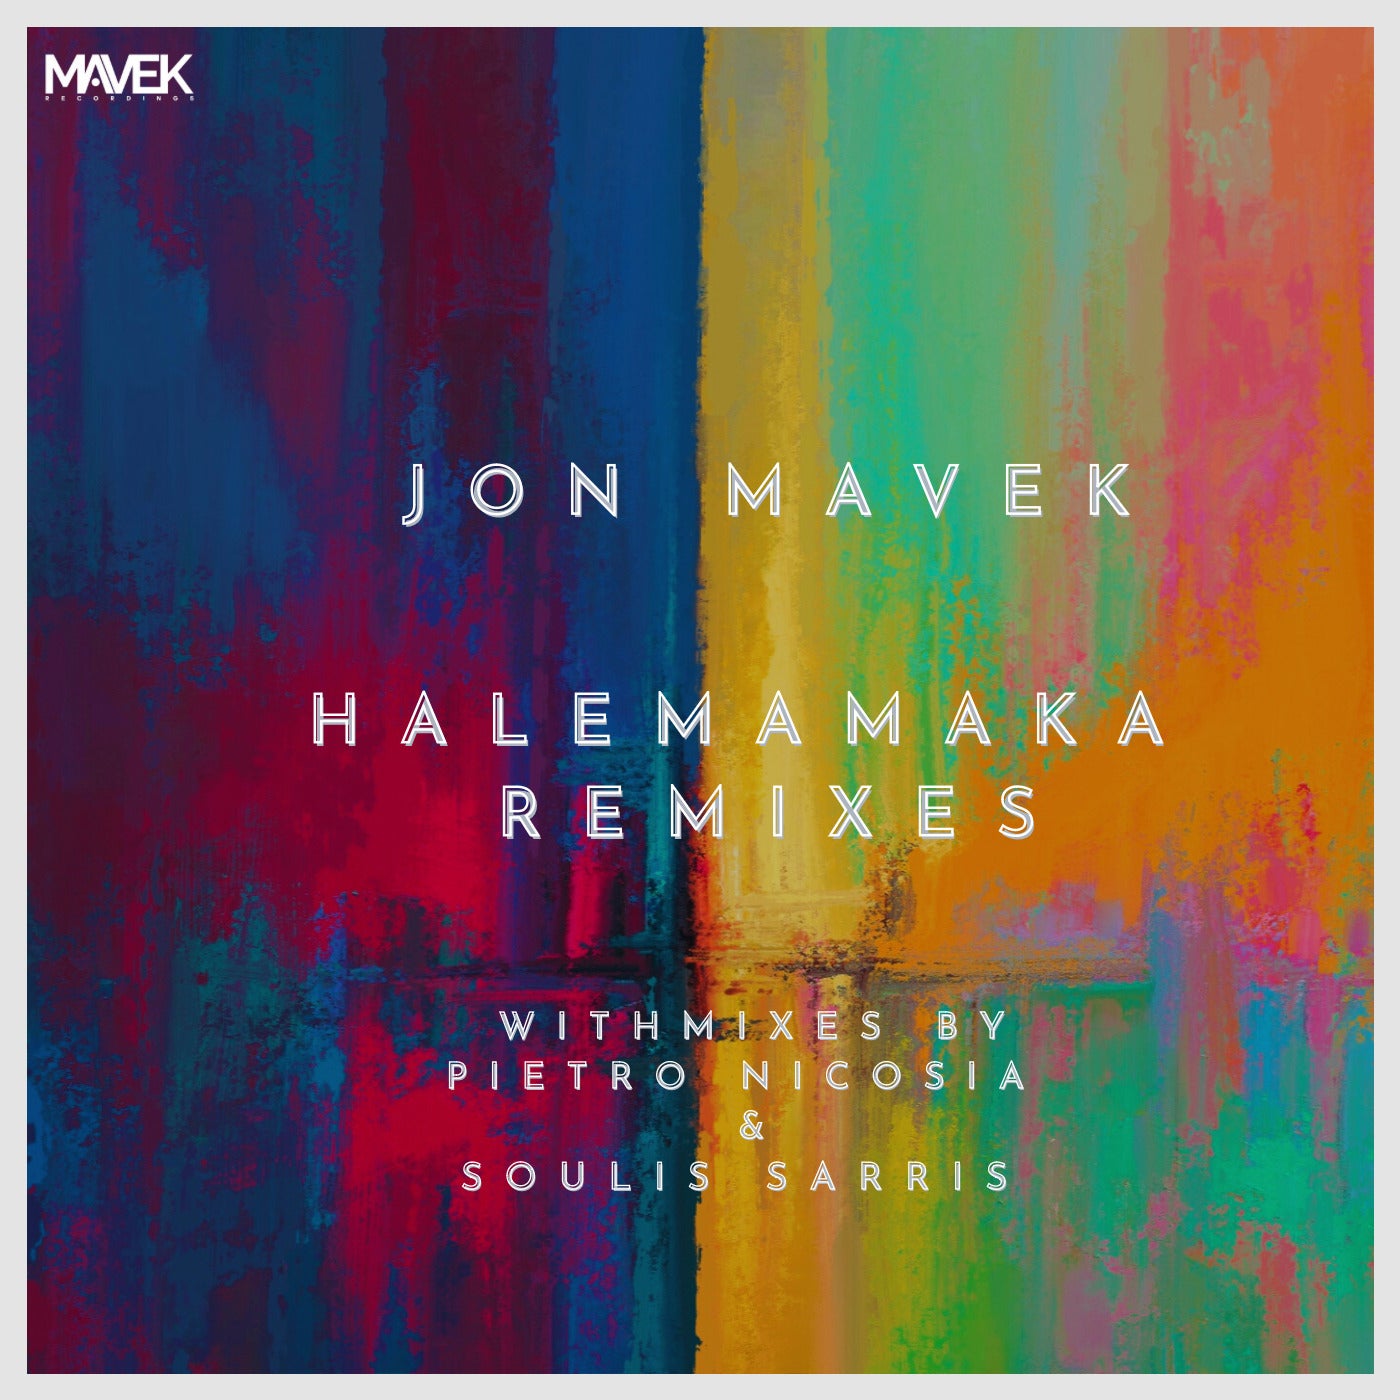 Halemamaka Remixes